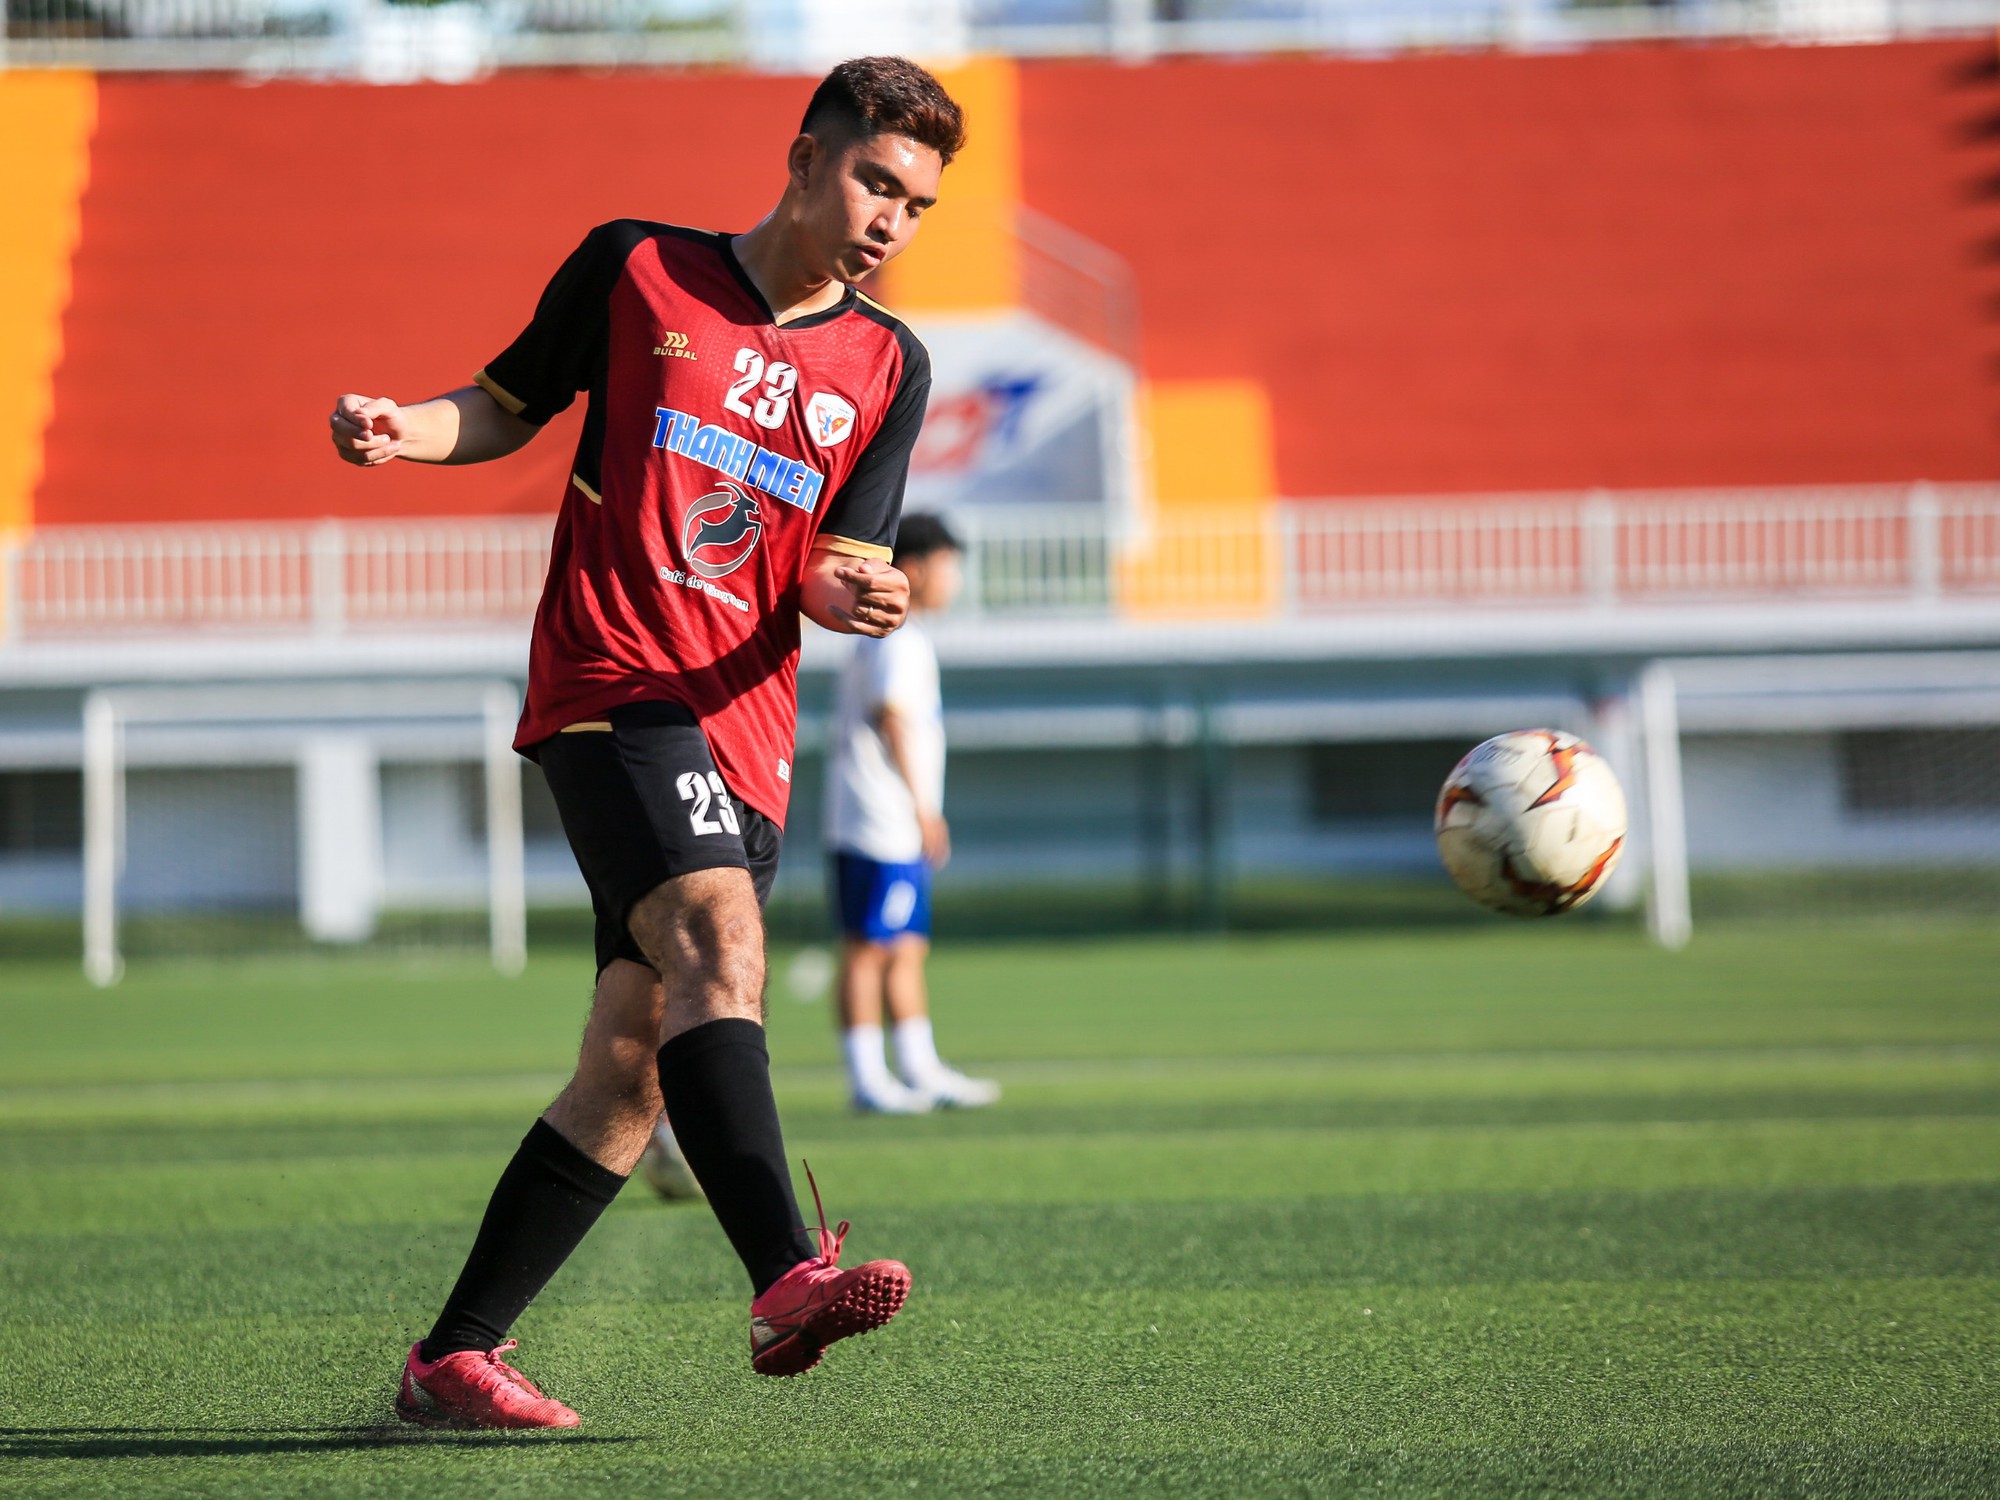 HLV đội ĐH Quốc tế Hồng Bàng nói lý do trò chuyện cầu thủ gần 20 phút - Ảnh 10.